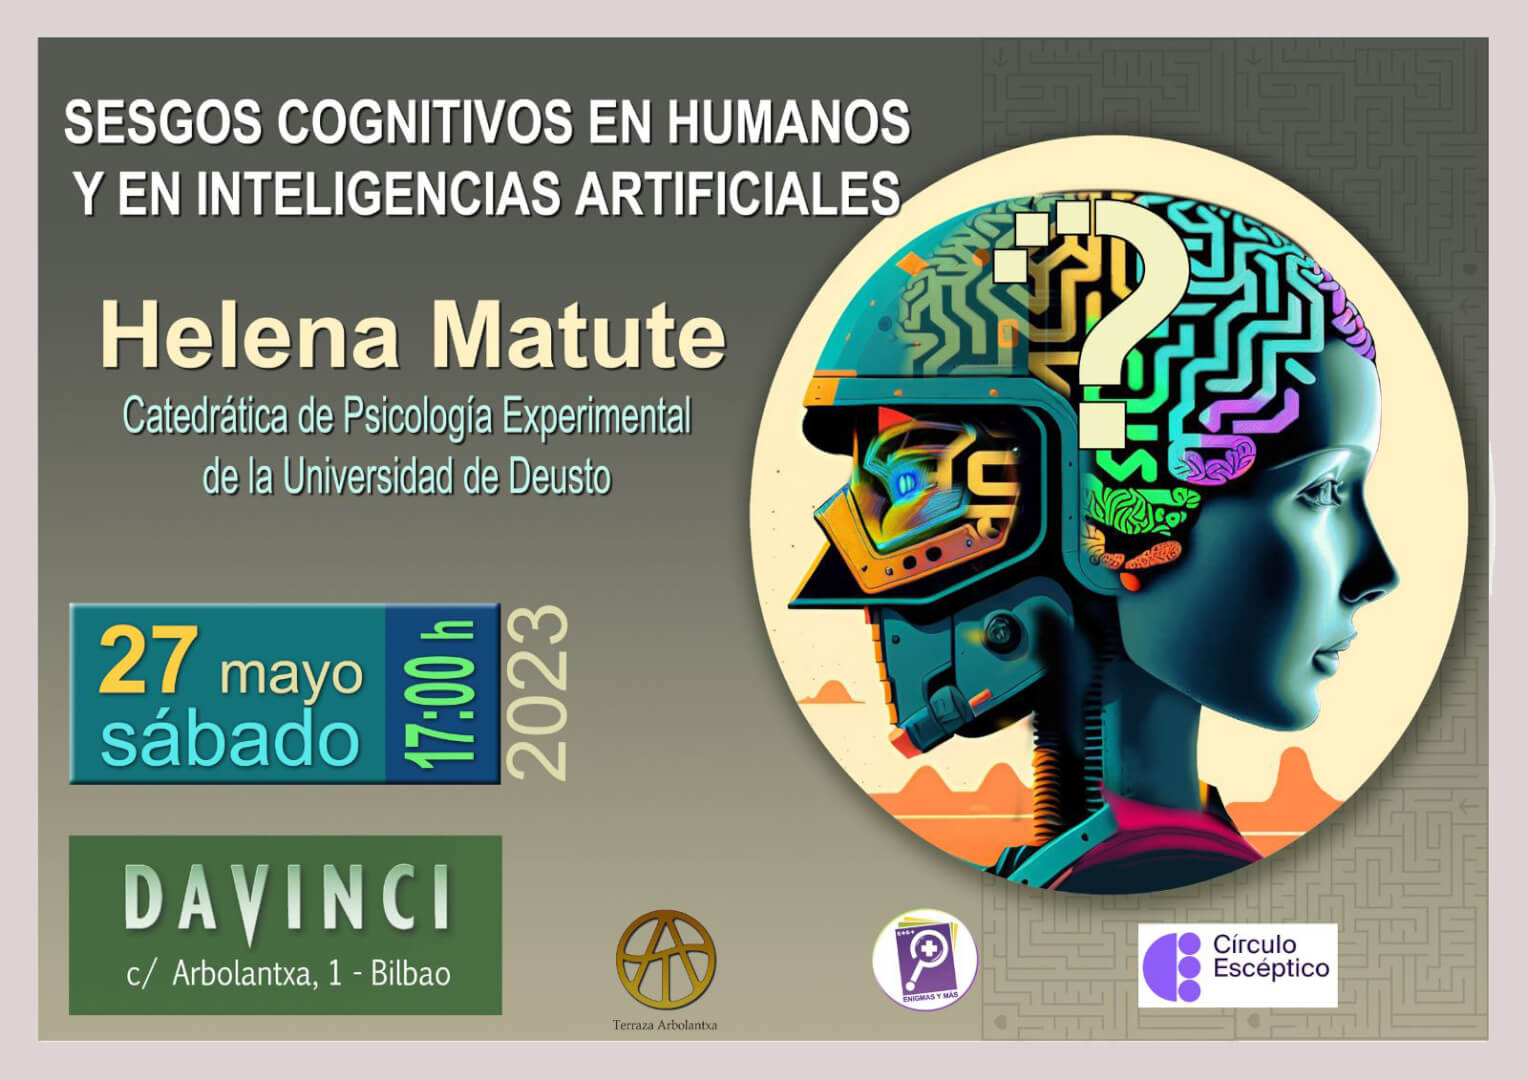 Sesgos cognitivos en humanos y en inteligencias artificiales